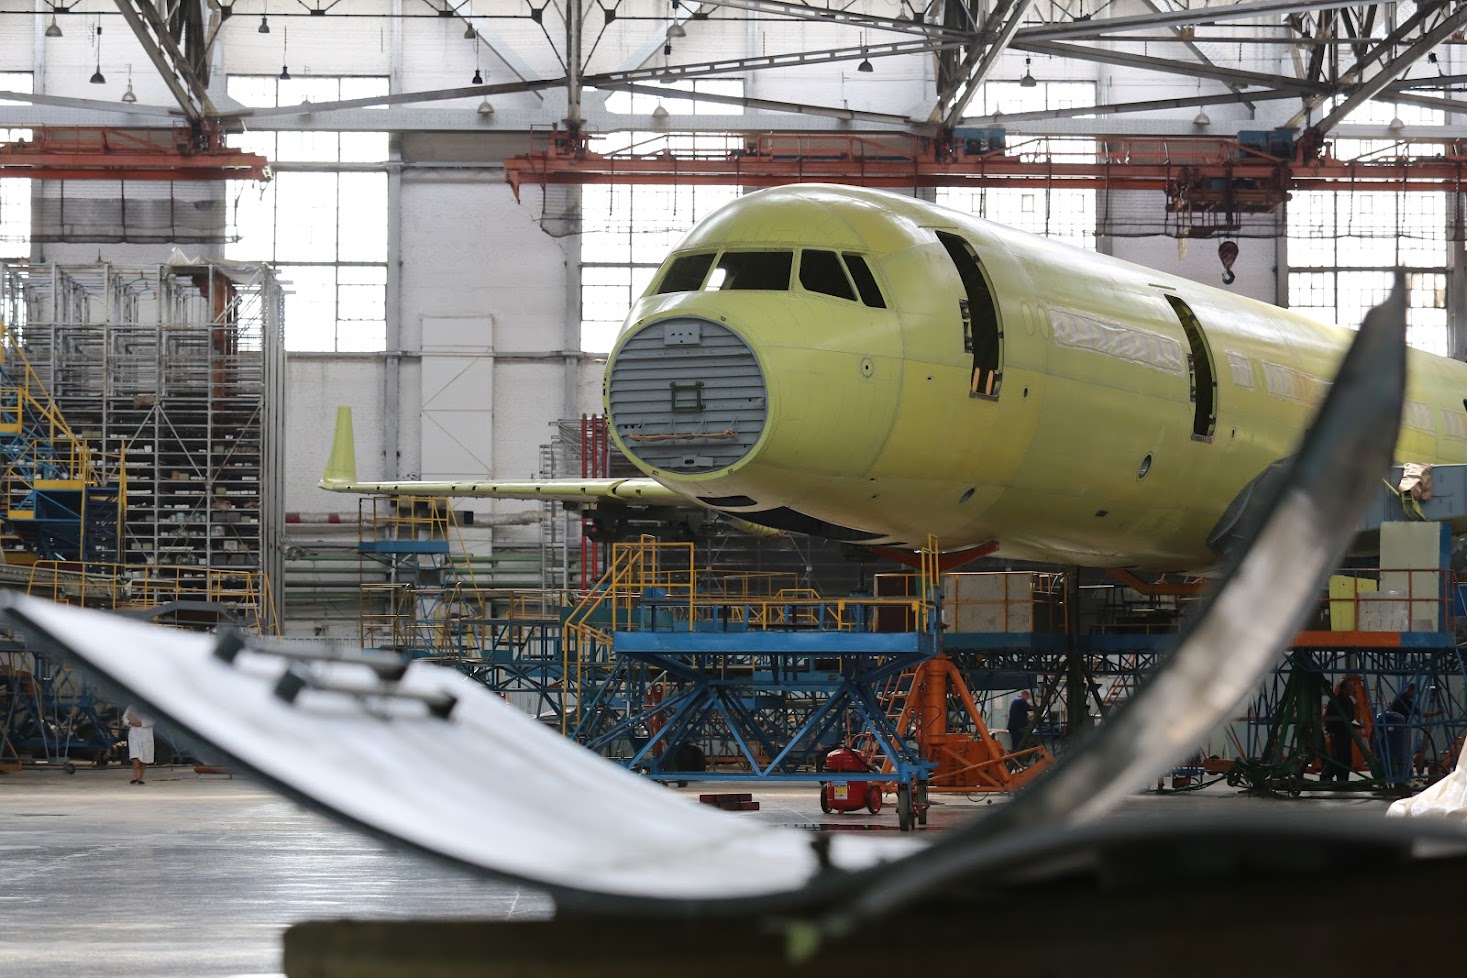 Rusya, yaptırımlar sonrası yerli yolcu uçak üretimini artırdı